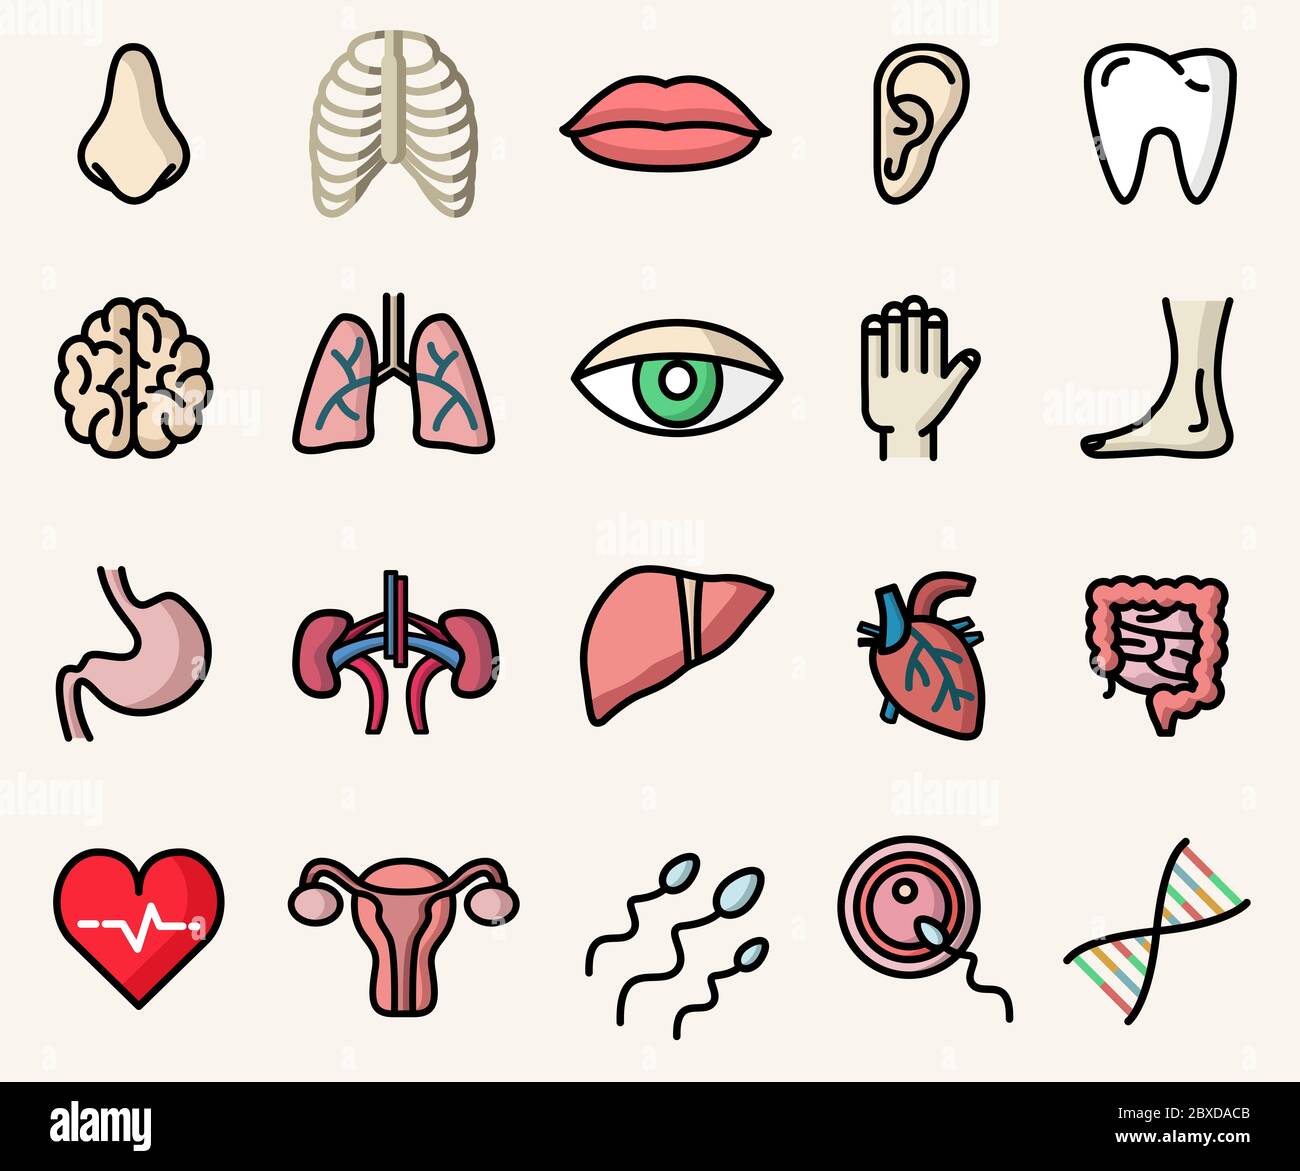 Bunte Ikonen der Anatomie und menschlichen Körperteile. Isolierte Vektorgrafiken Stock Vektor